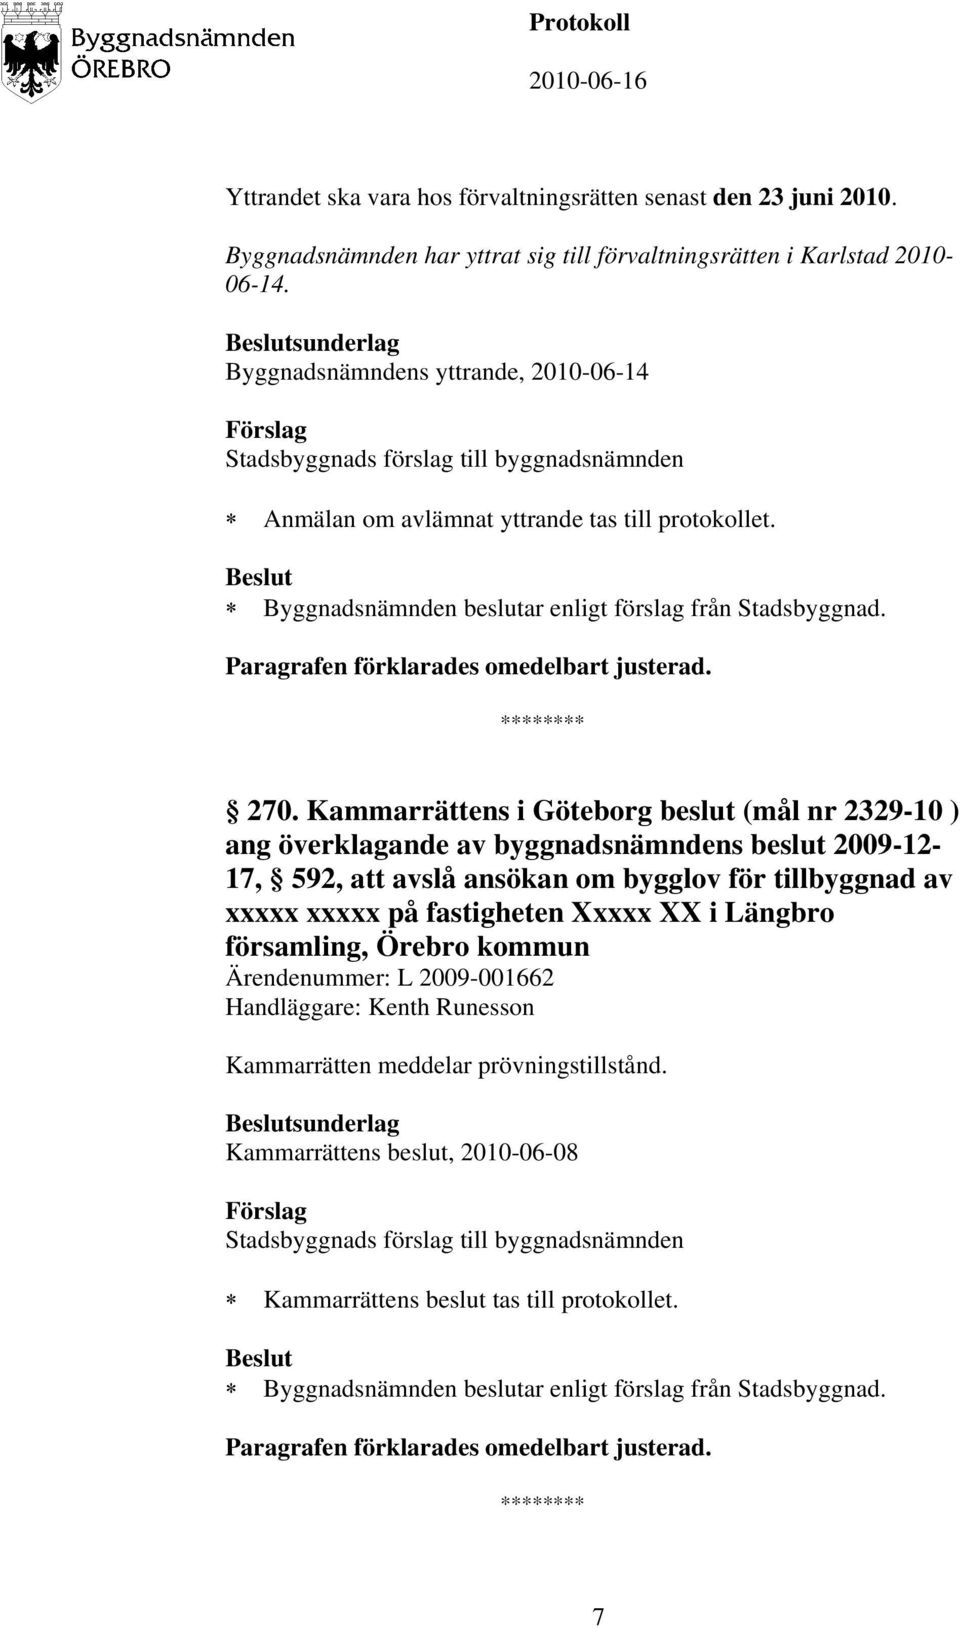 Kammarrättens i Göteborg beslut (mål nr 2329-10 ) ang överklagande av byggnadsnämndens beslut 2009-12- 17, 592, att avslå ansökan om bygglov för tillbyggnad av xxxxx